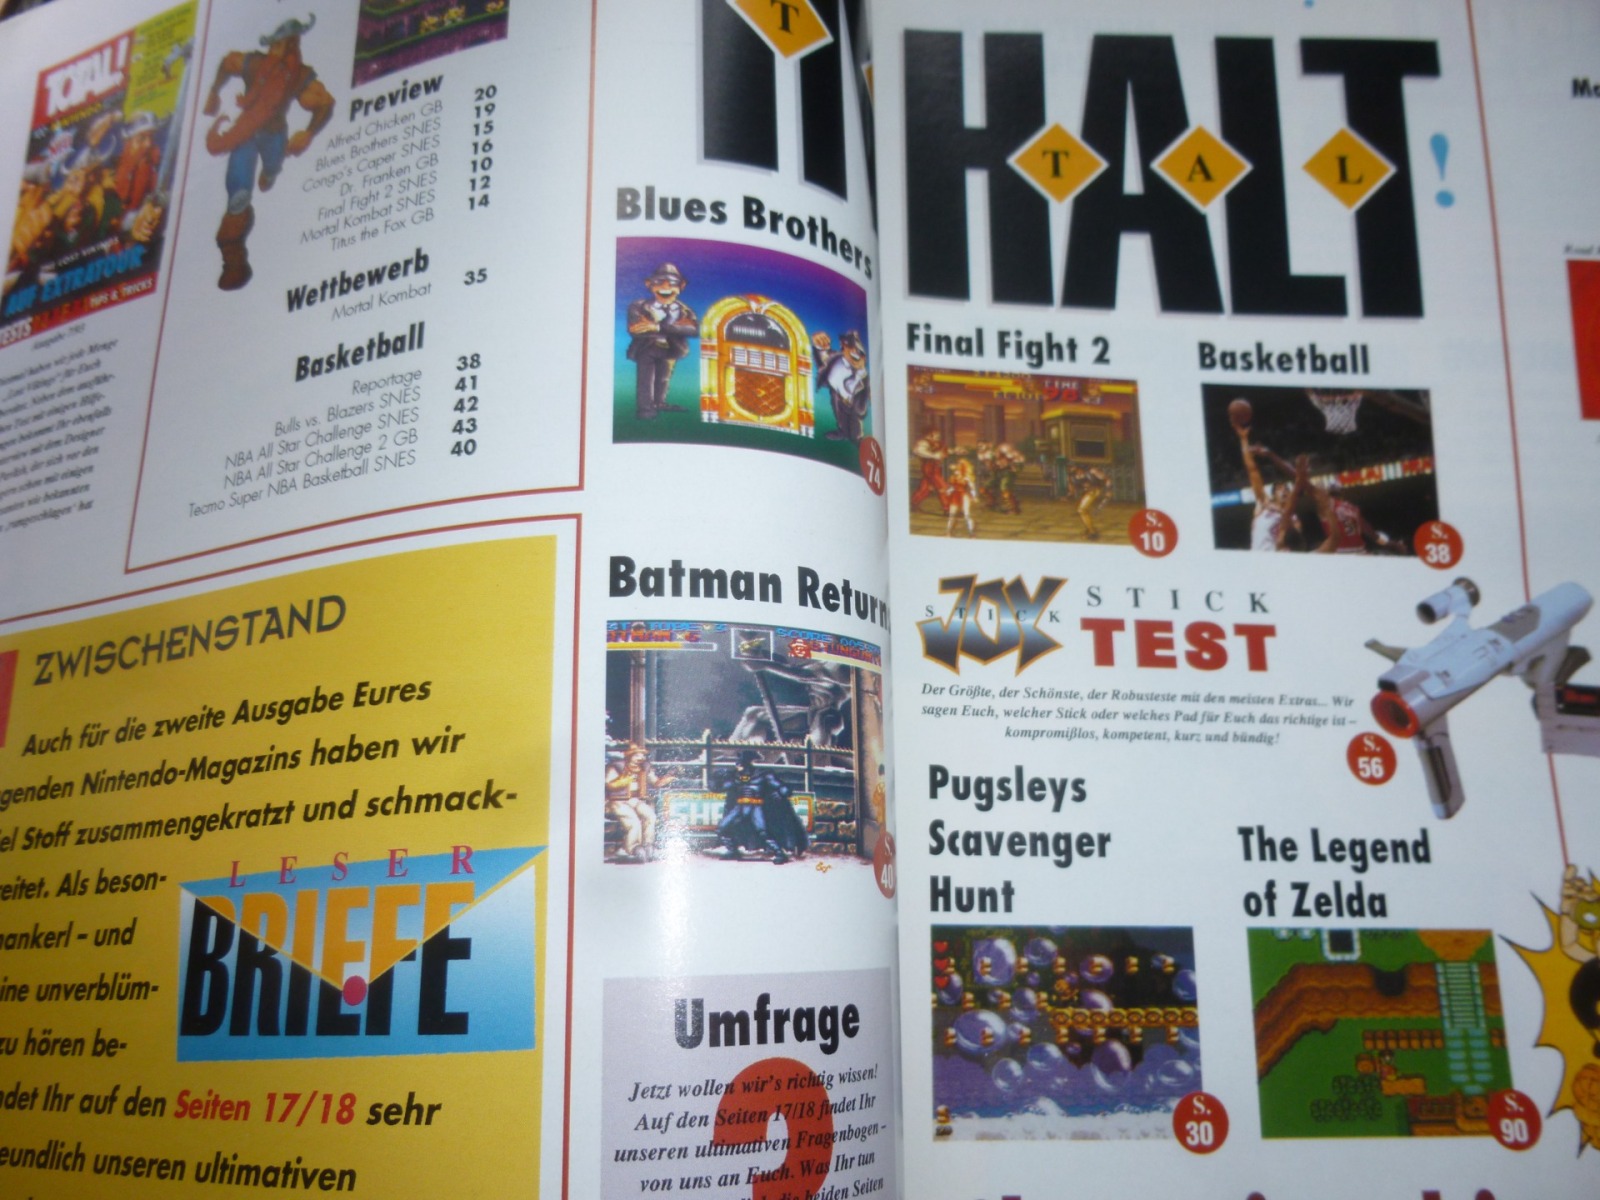 TOTAL Das unabhängige Magazin - 100% Nintendo - Ausgabe 7/93 1993 2